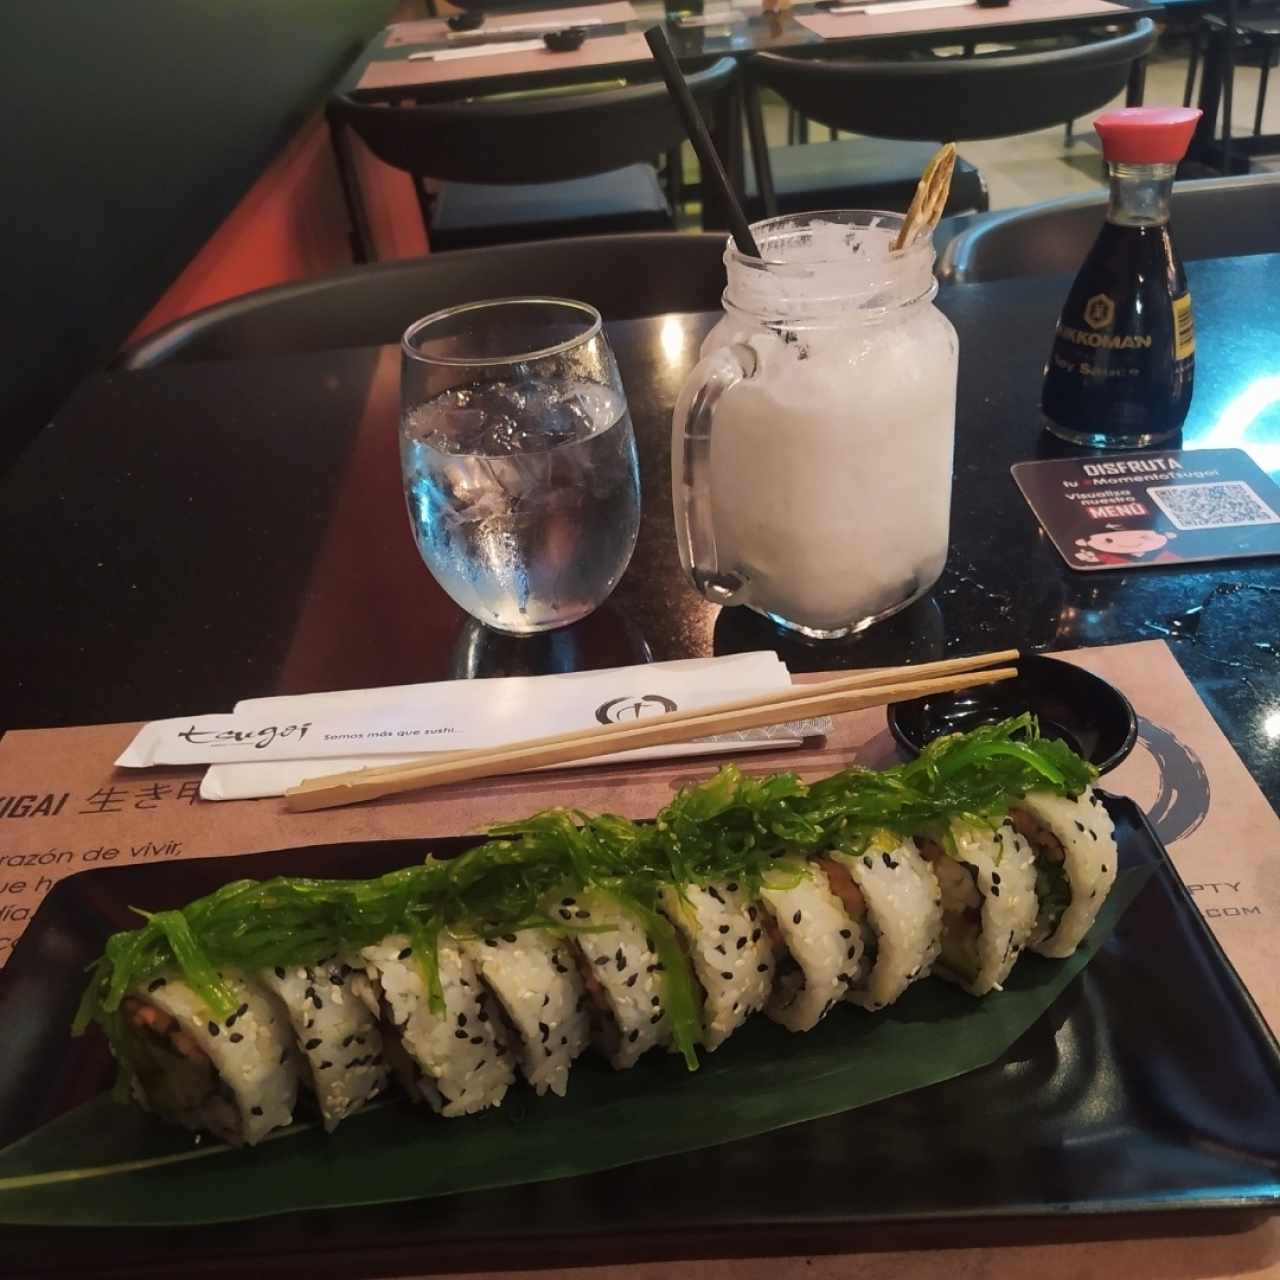 el sushi vegano delicioso 😋🤤